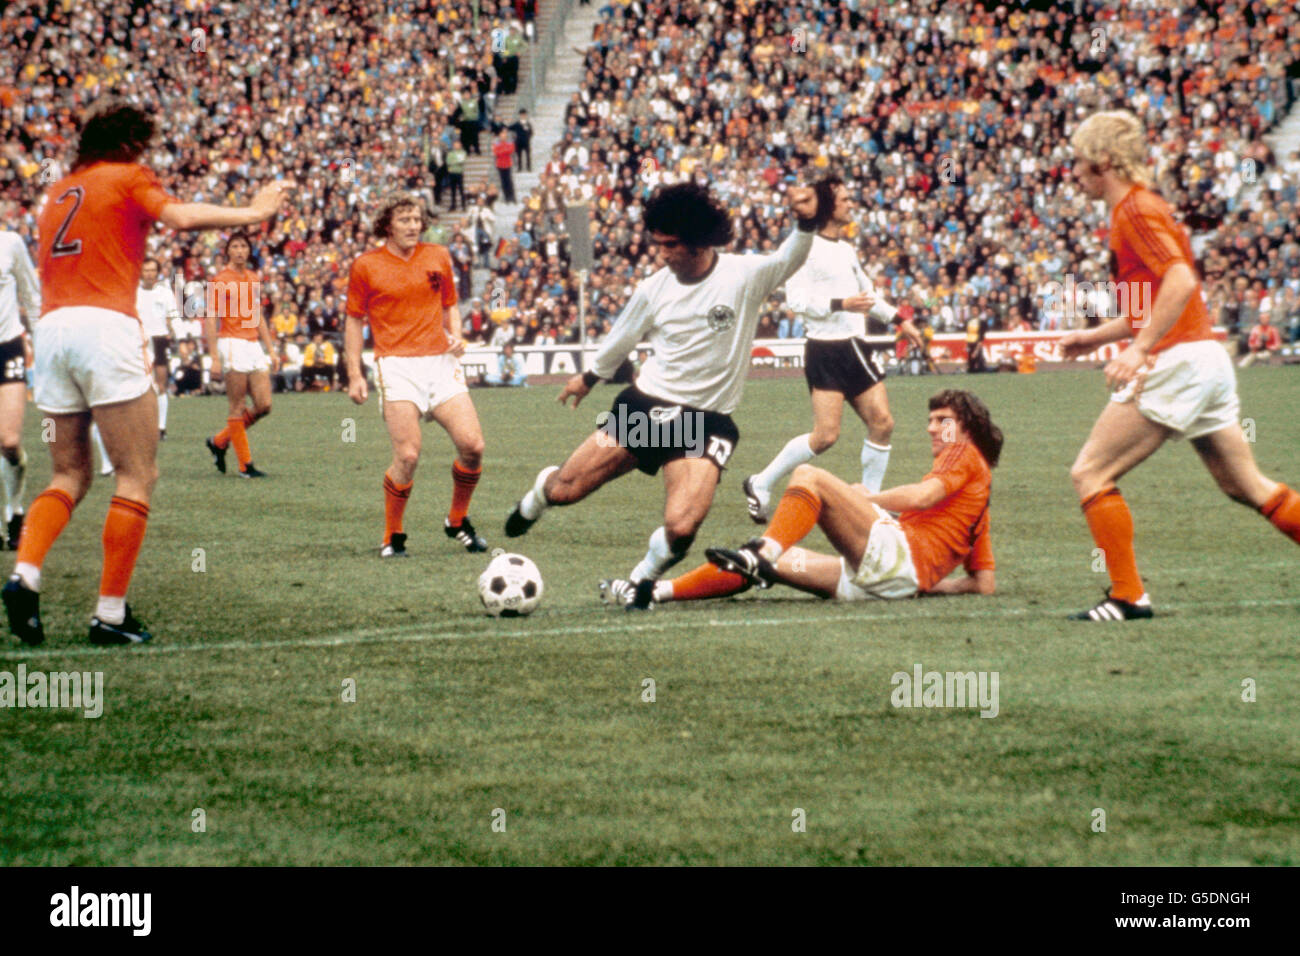 Calcio - Coppa del mondo 1974 - finale - Germania Ovest / Olanda. Gerd Muller della Germania occidentale segna un gol Foto Stock